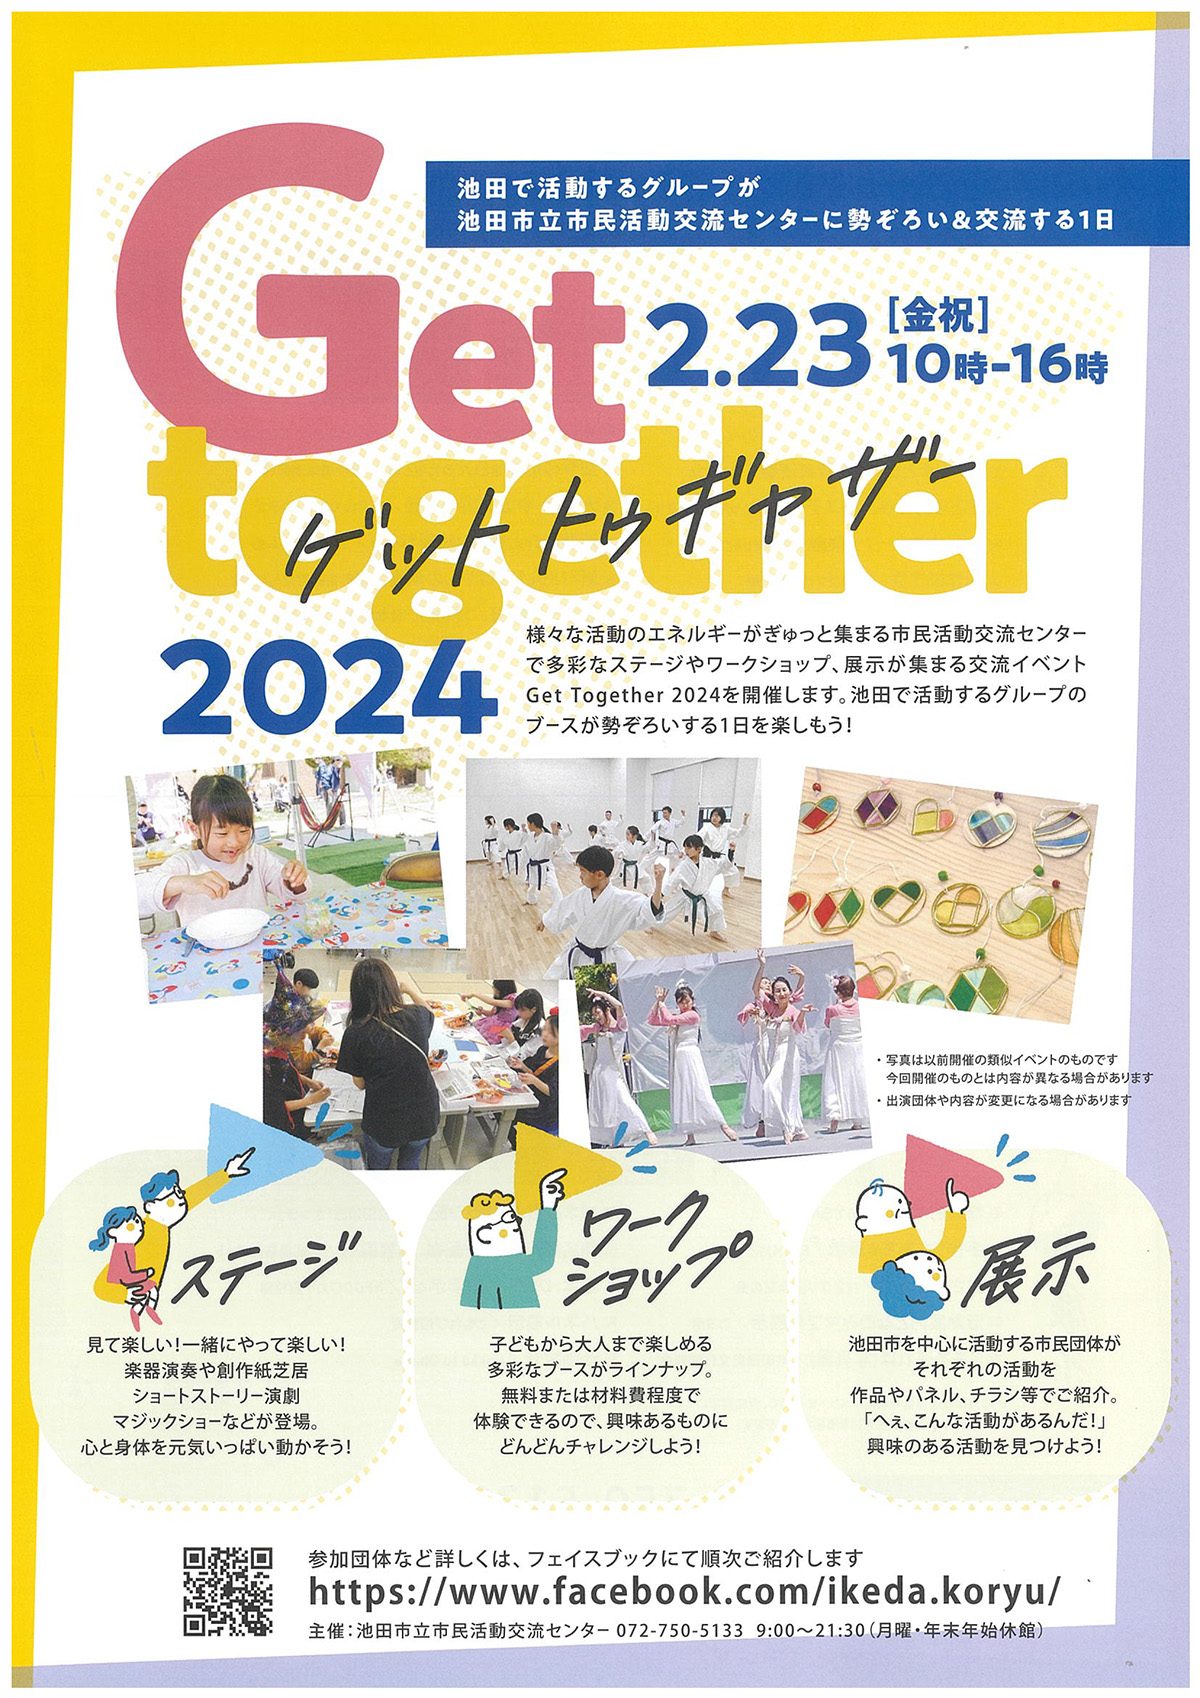 池田で活動する団体が市民活動交流センターに勢ぞろい! Get together 2024